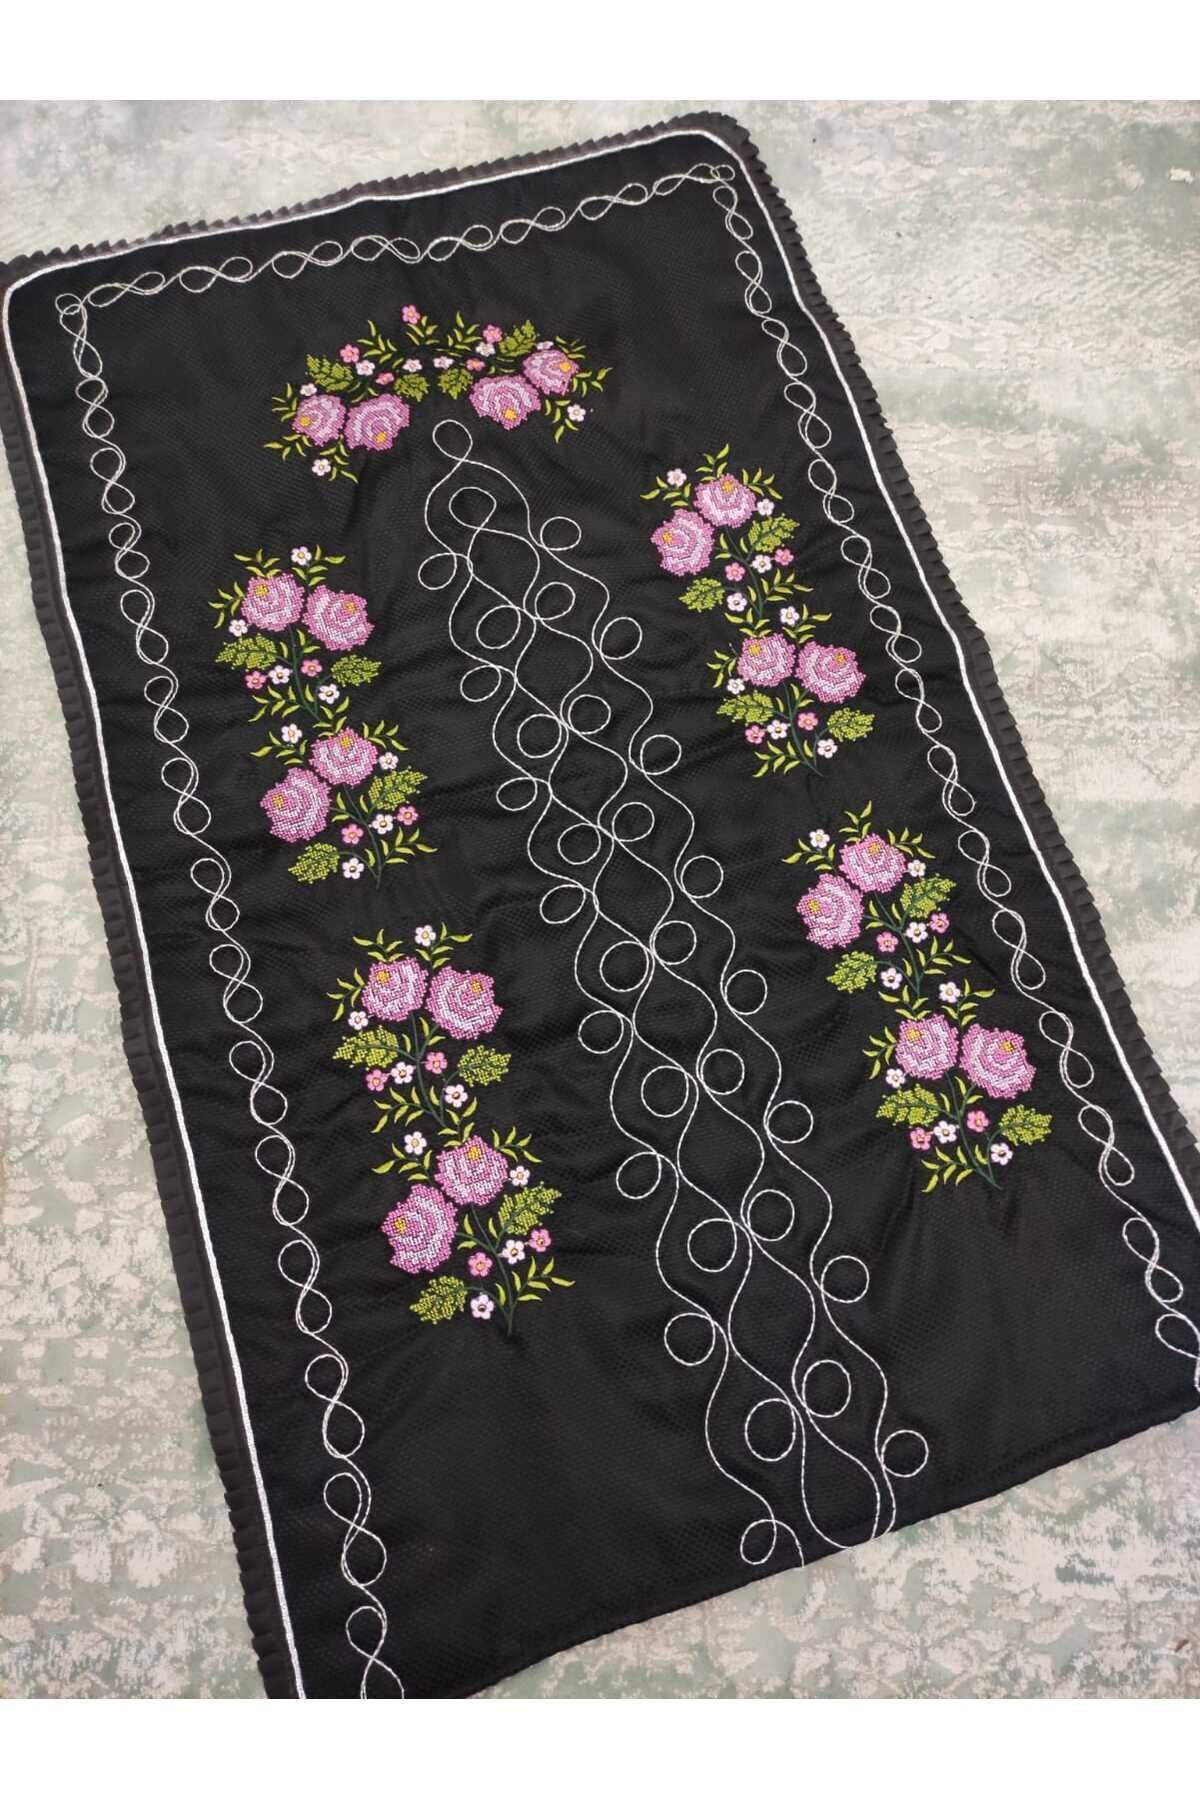 Çt Çeyizci Tekstil Kanaviçe Işlemeli Etamin Kumaş Tek Seccade - Siyah